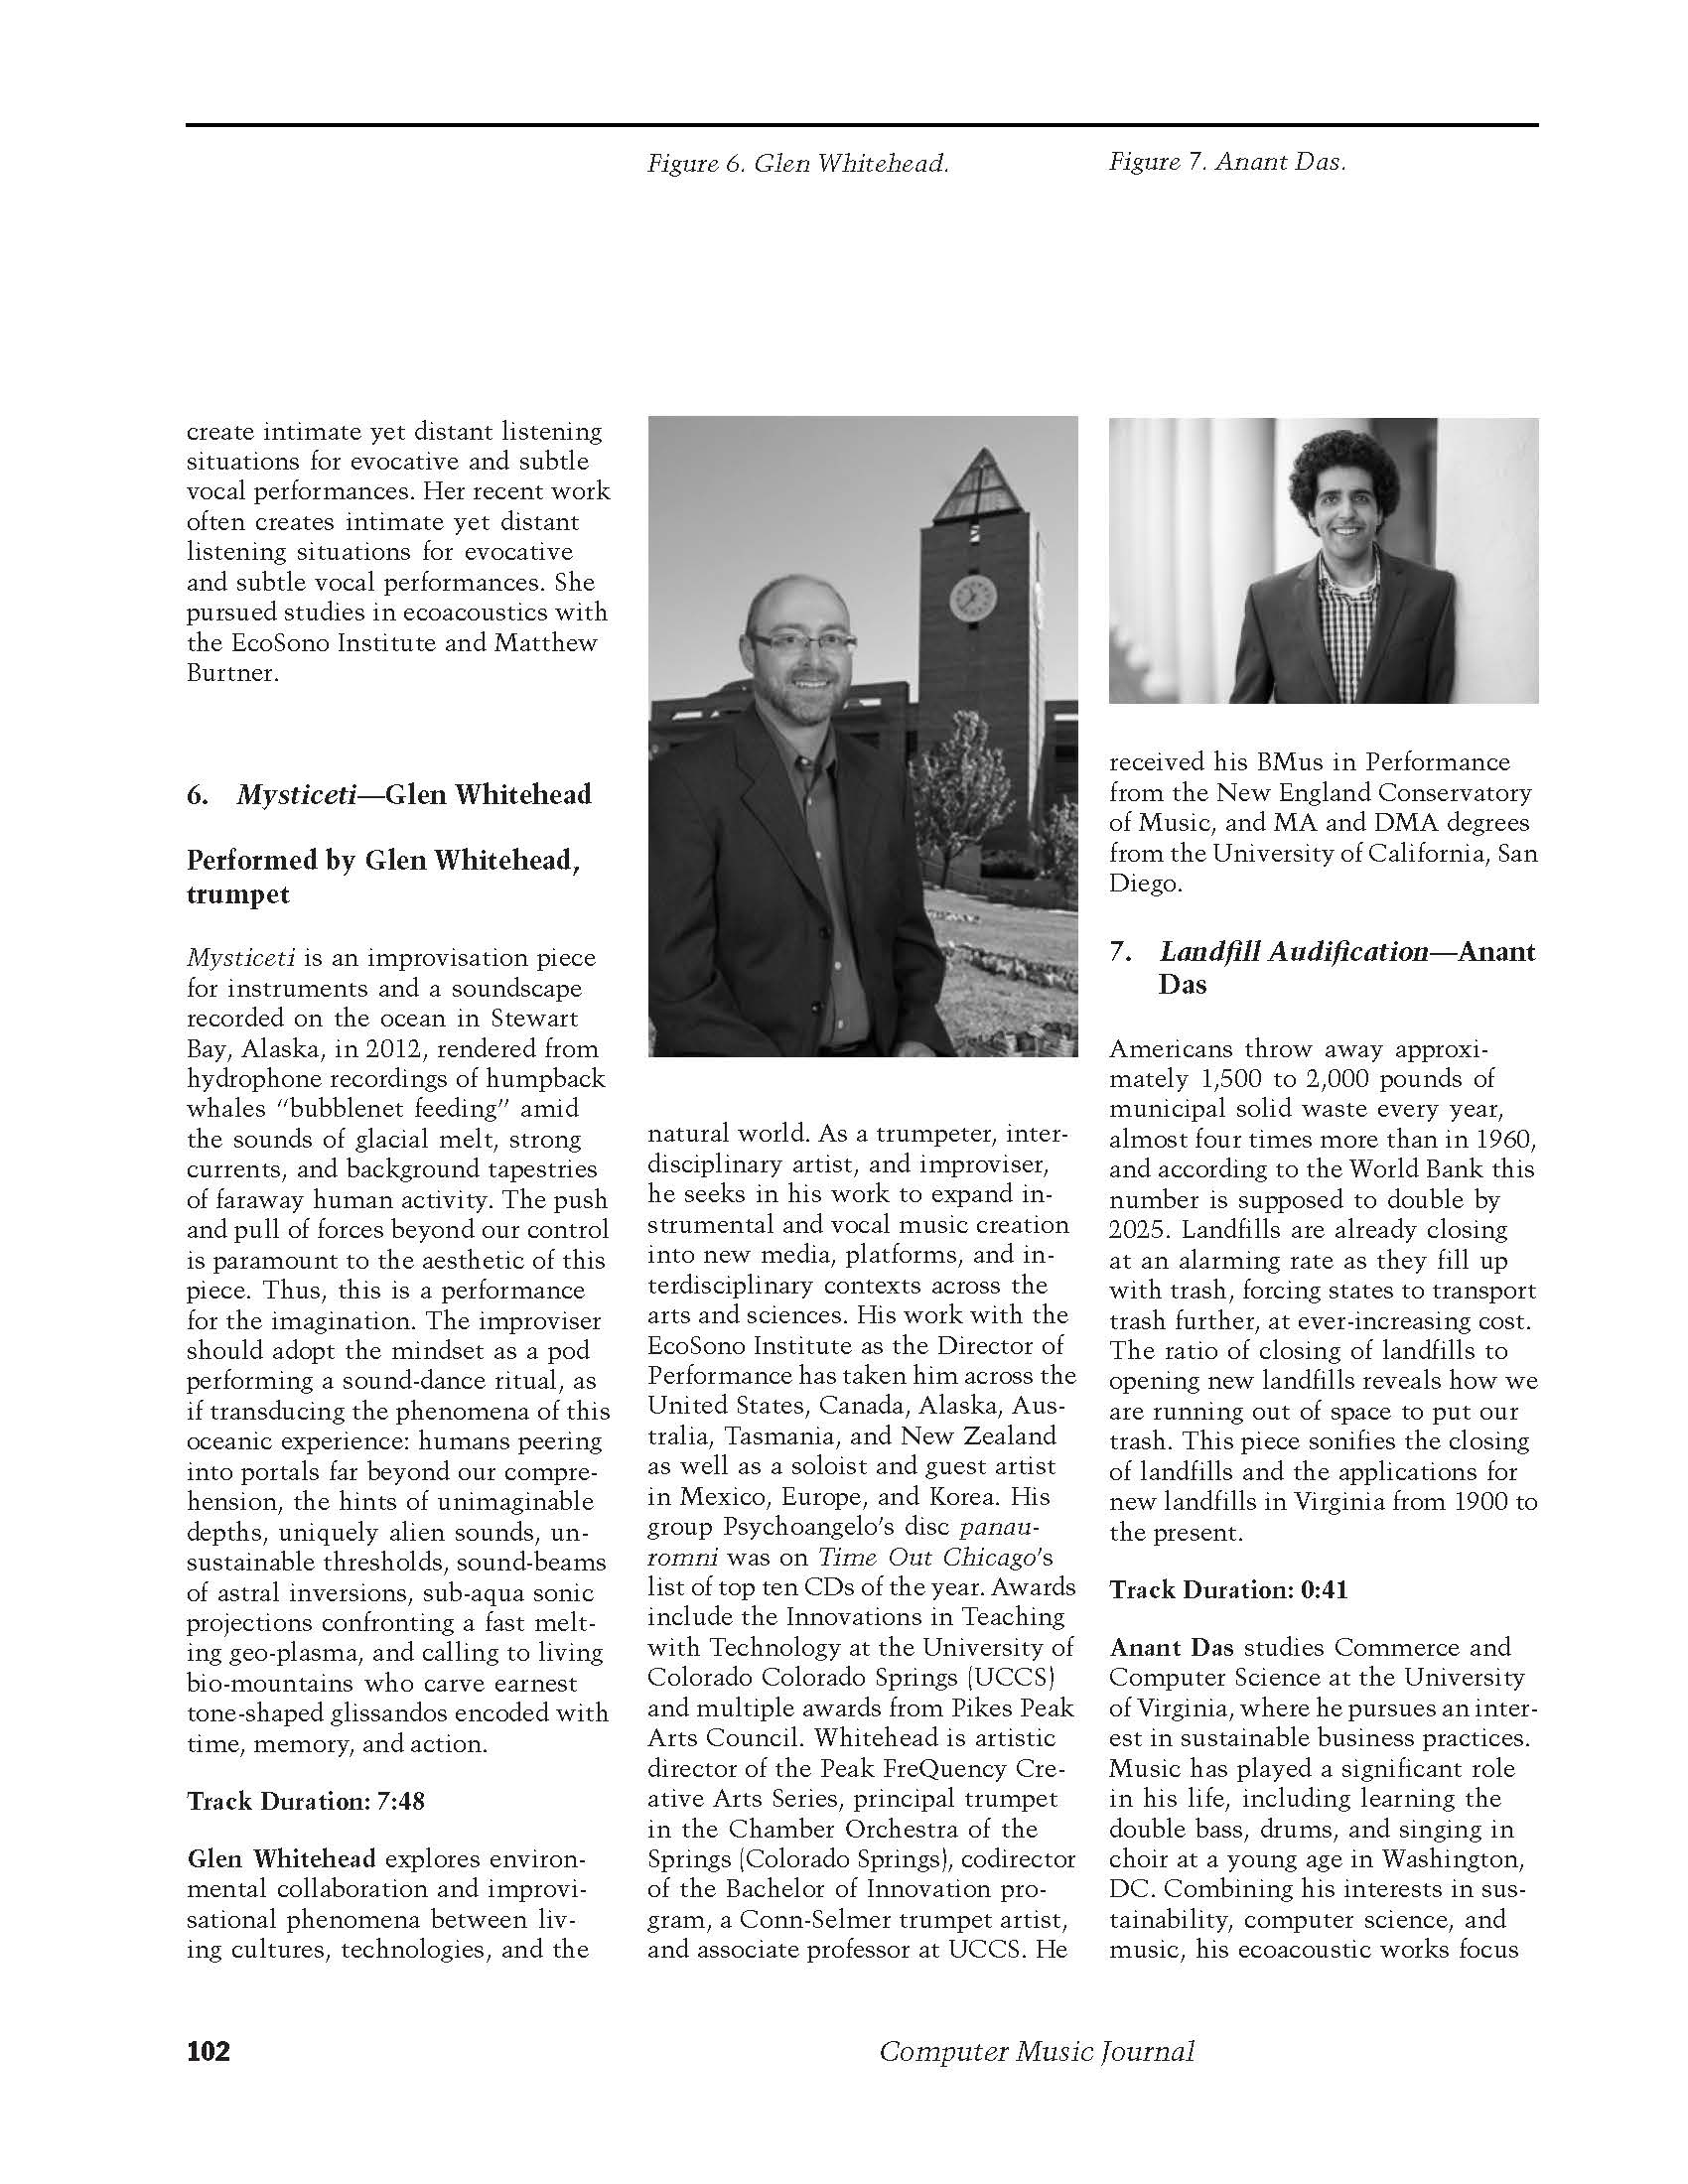 Computer Music Journal MIT_Page_4.jpg